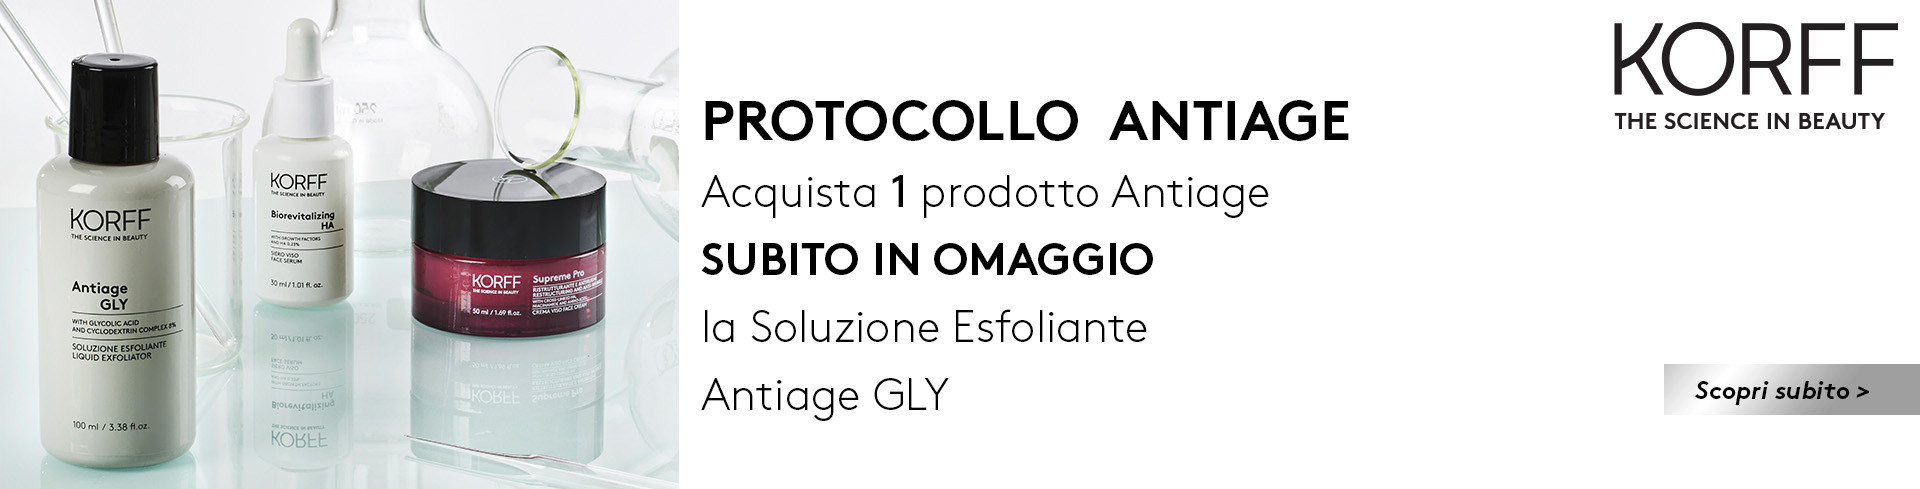 Korff - Protocollo antiage, acquista 1 prodotto anti-età e ricevi subito in omaggio la soluzione esfoliante Antiage GLY 30ml!